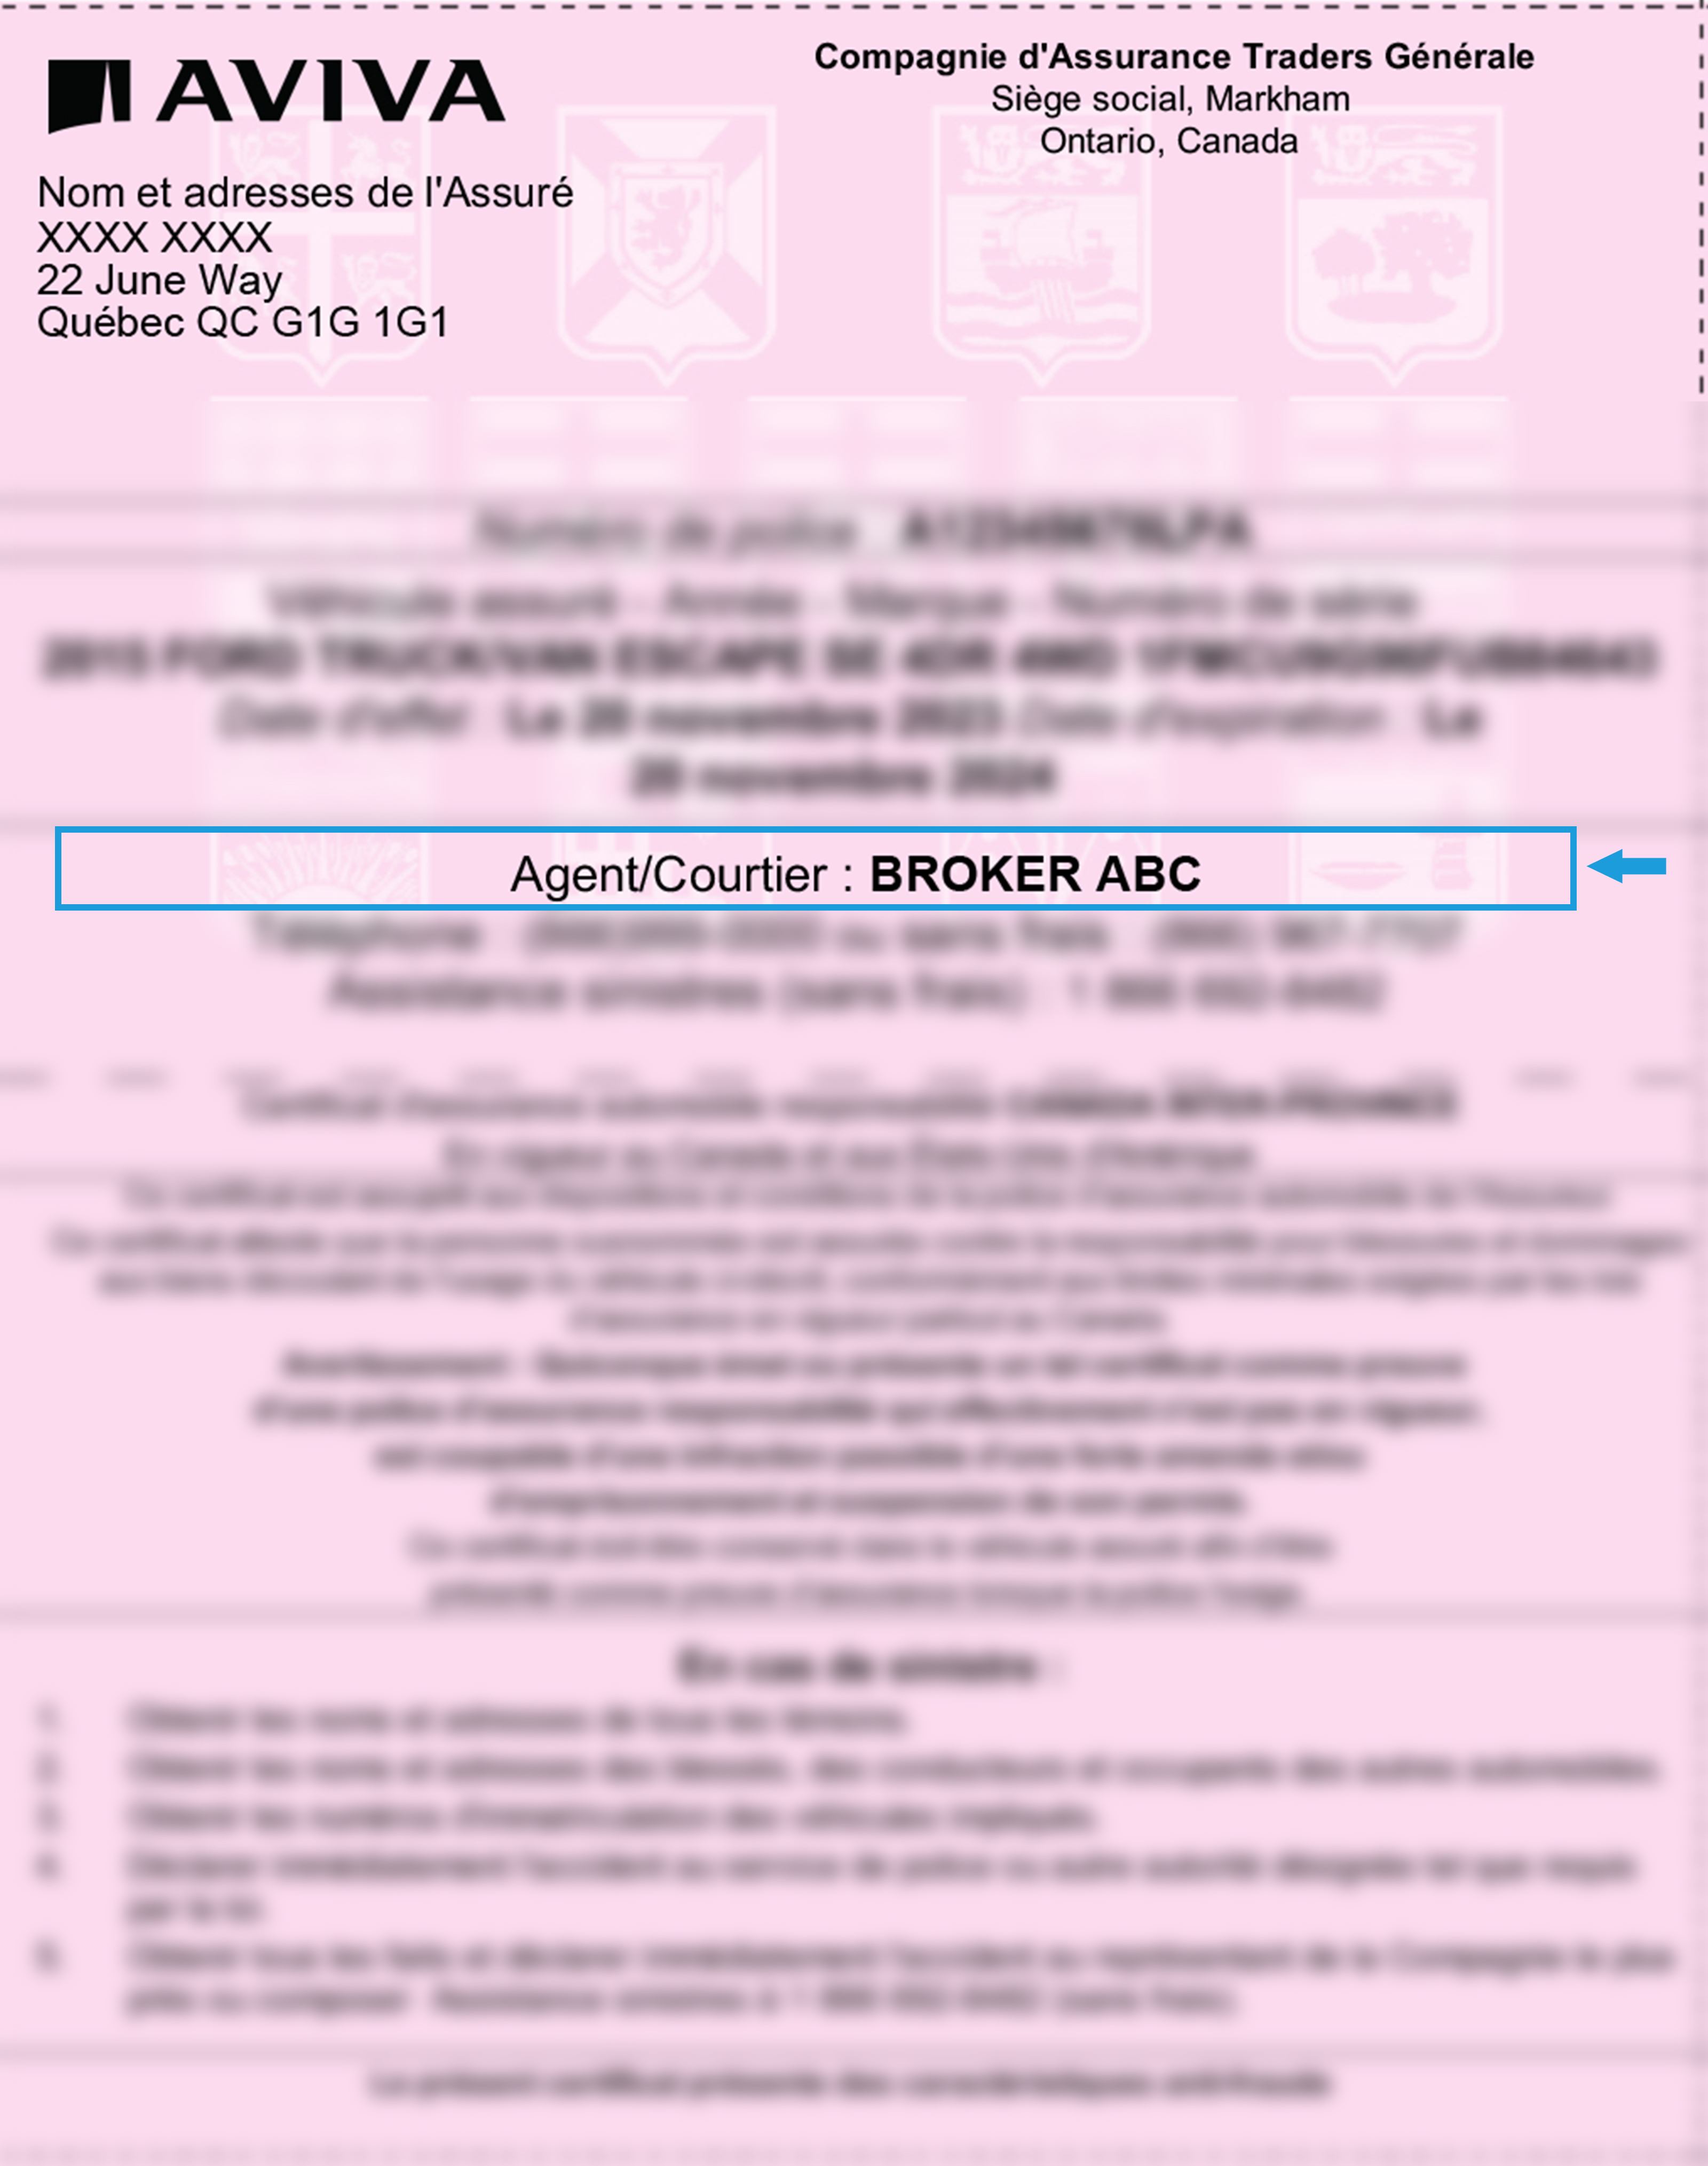 Blurred liability slip highlighting Broker/Agent details